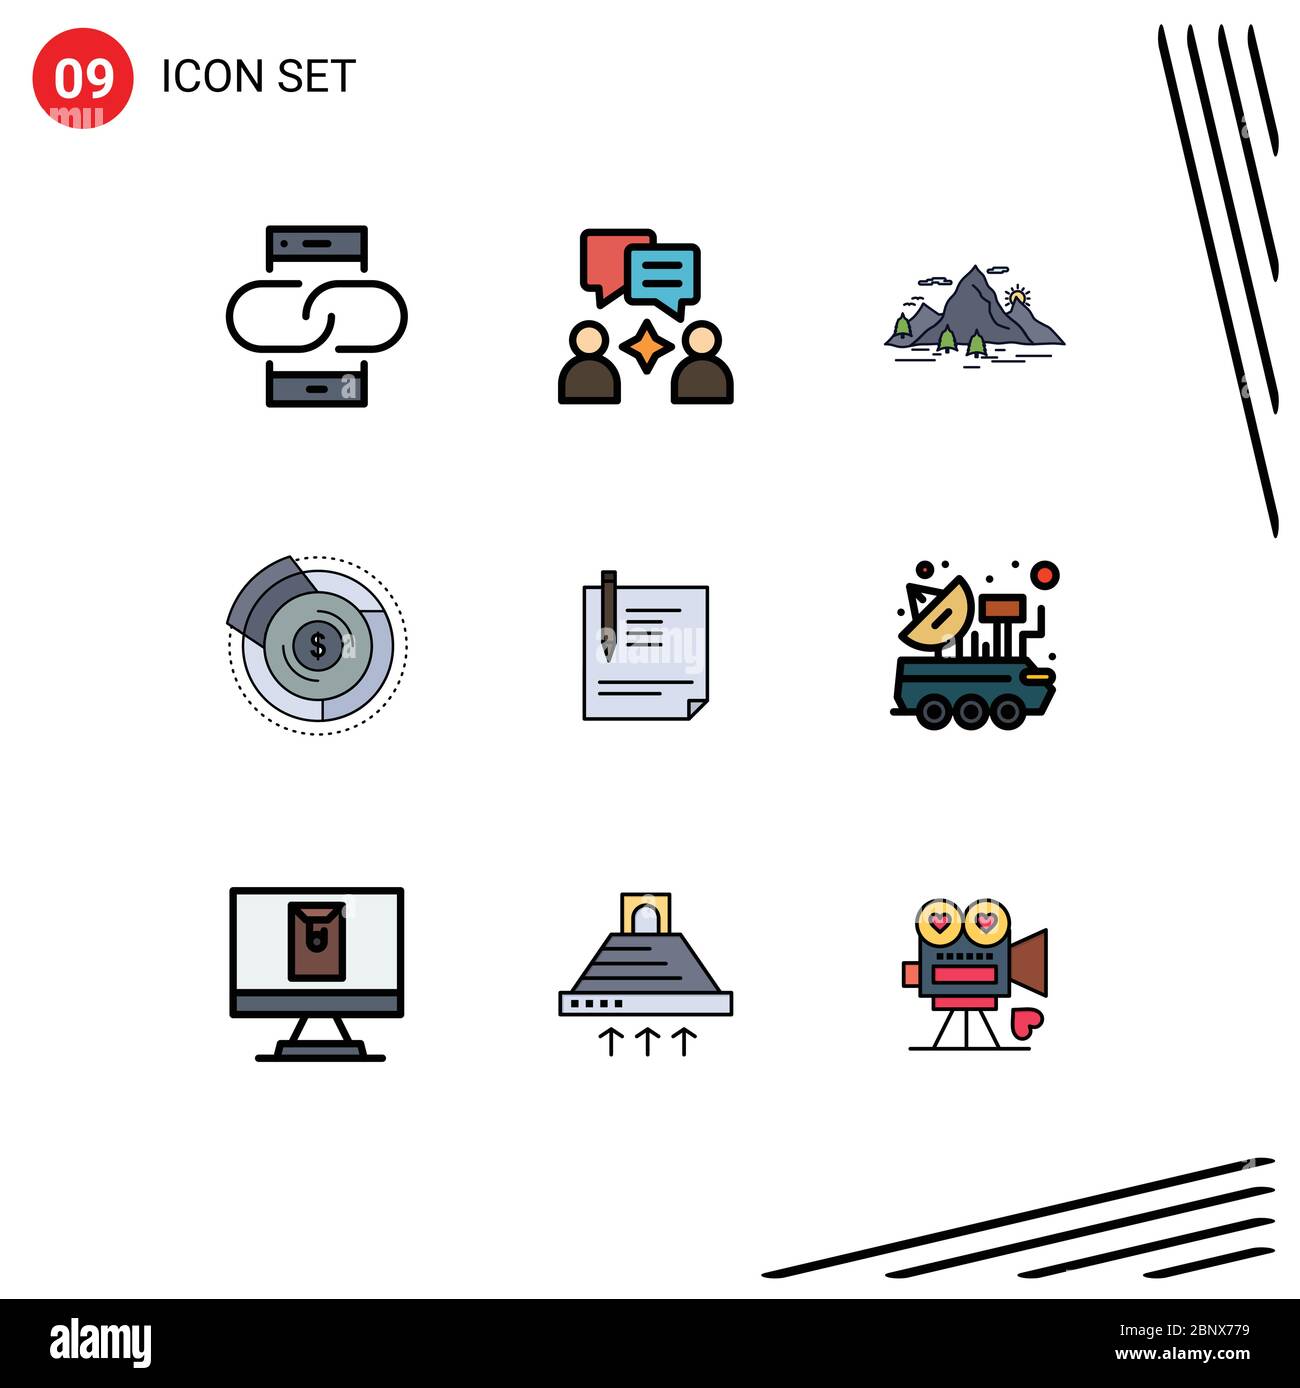 Set von 9 modernen UI-Symbole Symbole Zeichen für Grafik, Diagramm, Natur, Budget, Szene editierbare Vektor Design-Elemente Stock Vektor